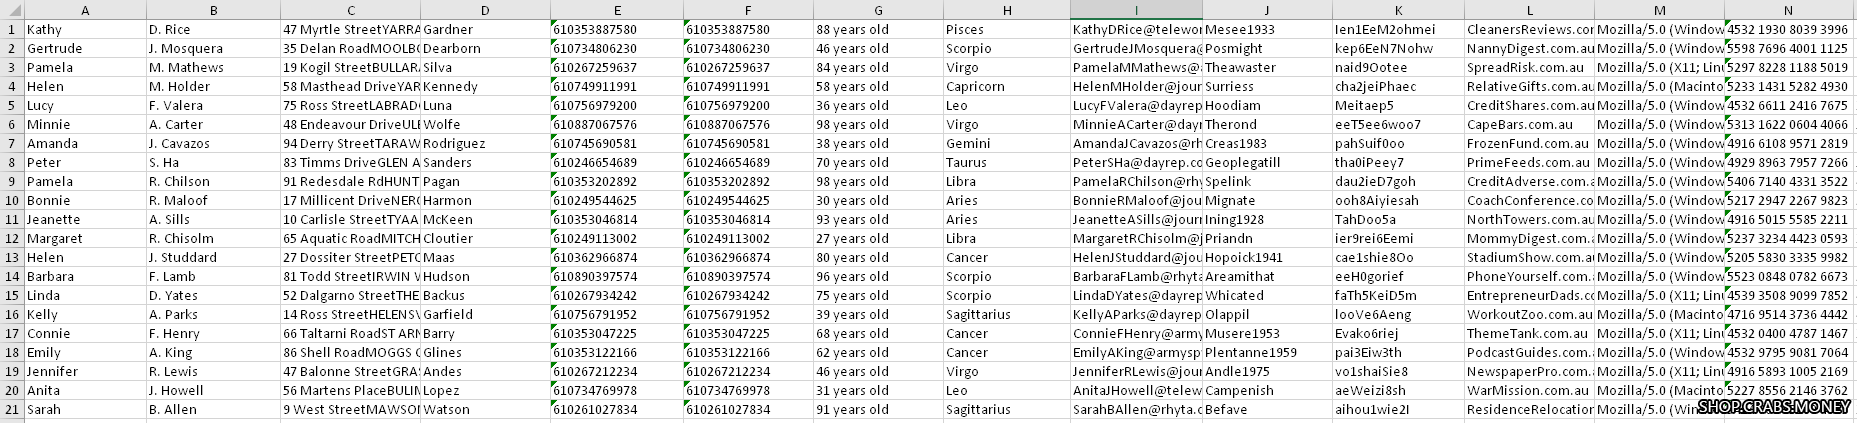 Fake name generator персональных данных для разных стран